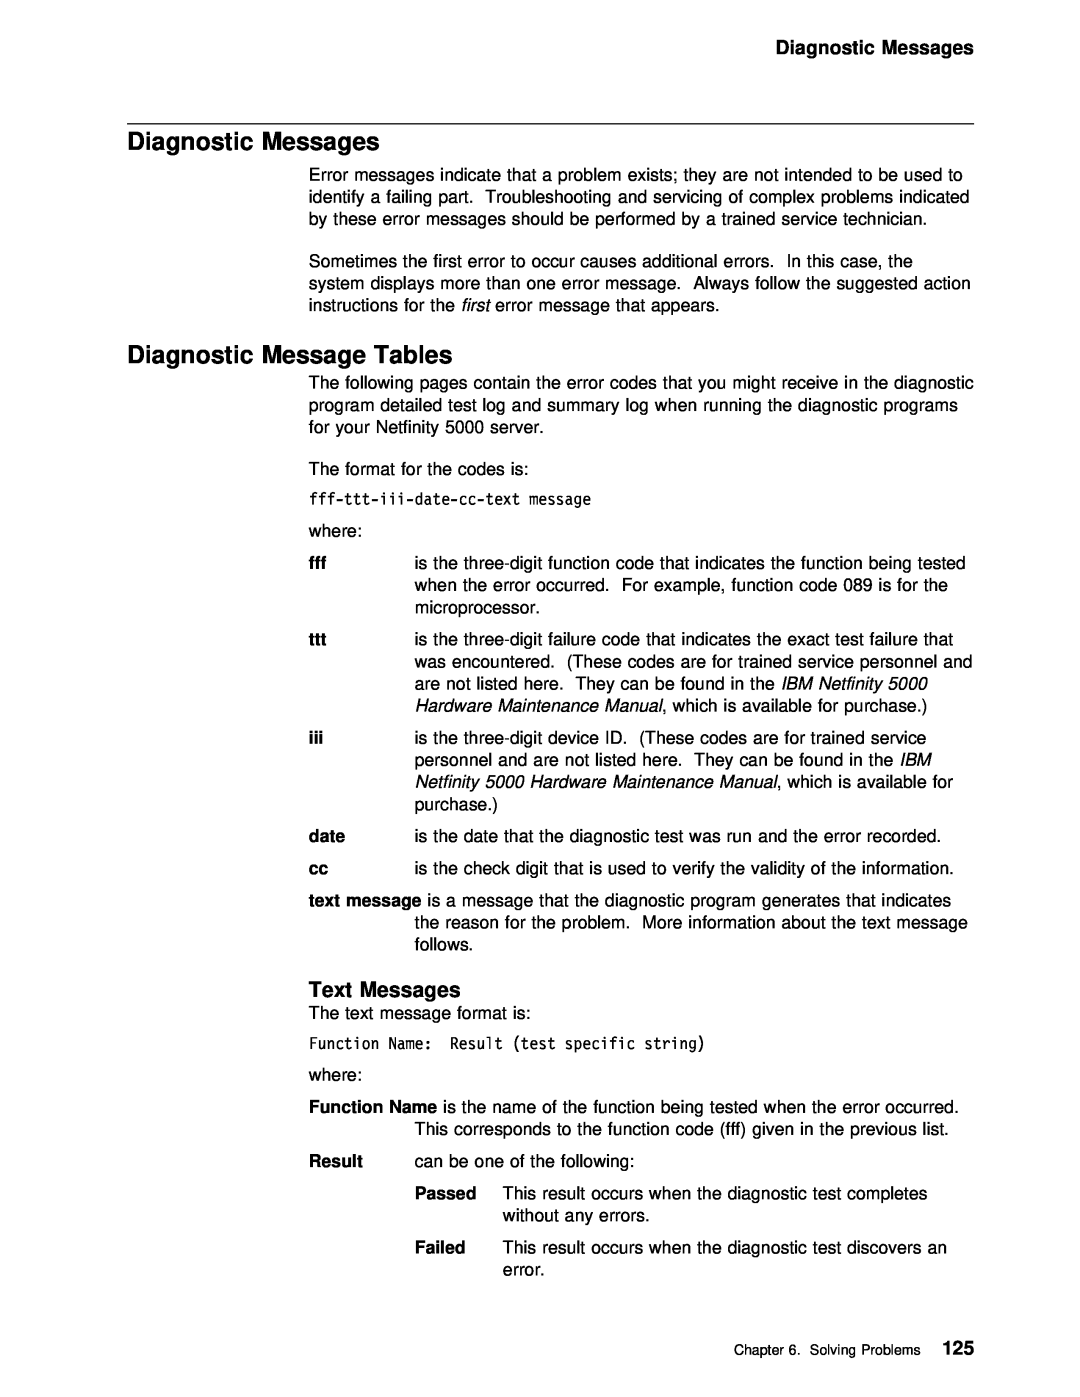 IBM 5000 manual Diagnostic Messages, Diagnostic Message Tables, Text Messages 